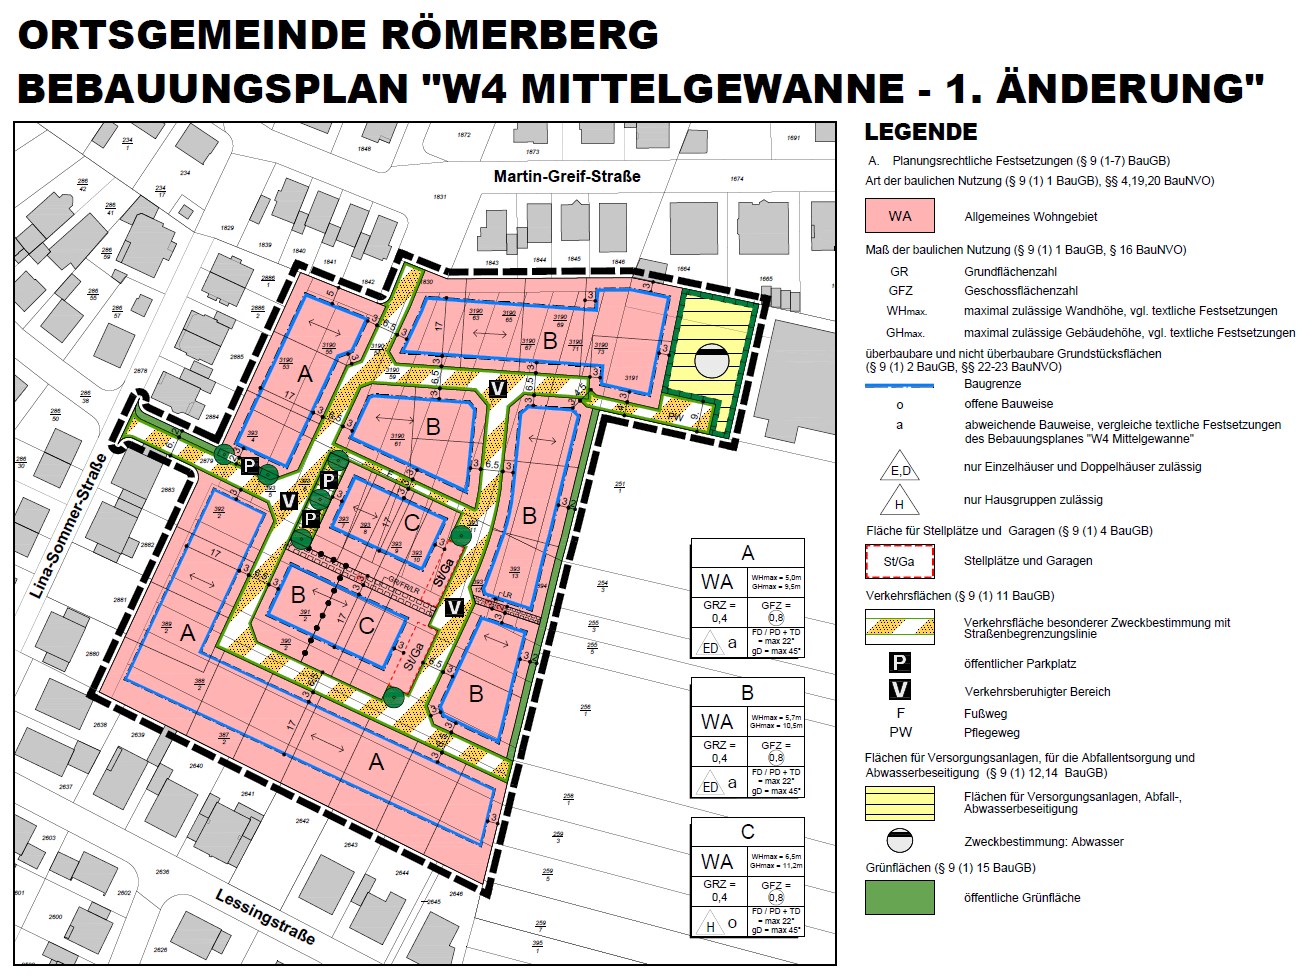 Bebauungsplan Römerberg "W4 Mittelgewanne"